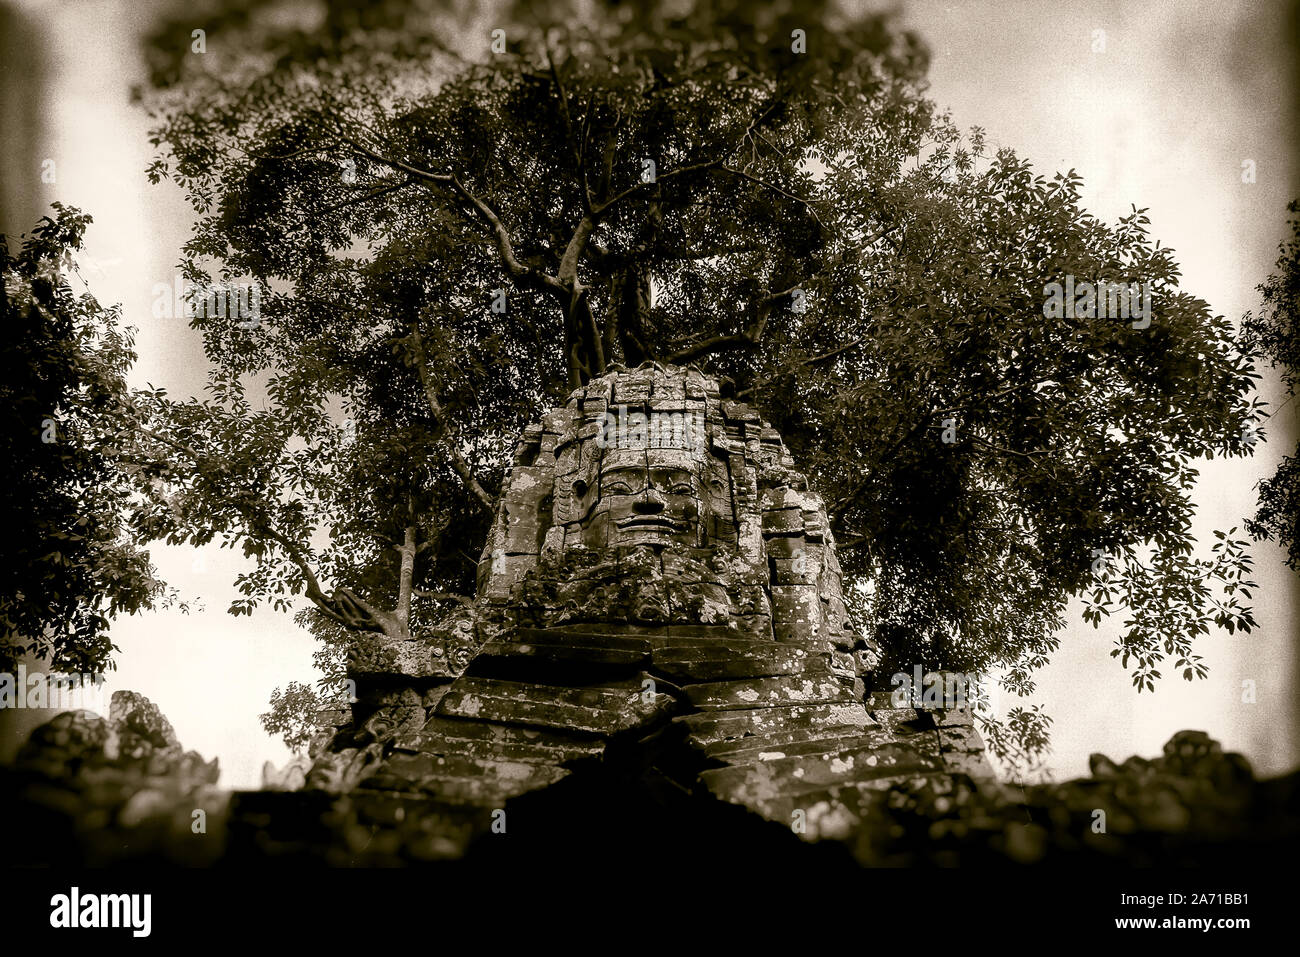 Cambogia Angkor, Ta Som jungle tempio: un volto scolpito in pietra sotto un albero in Ta Som jungle tempio di Angkor area archeologica. Foto Stock